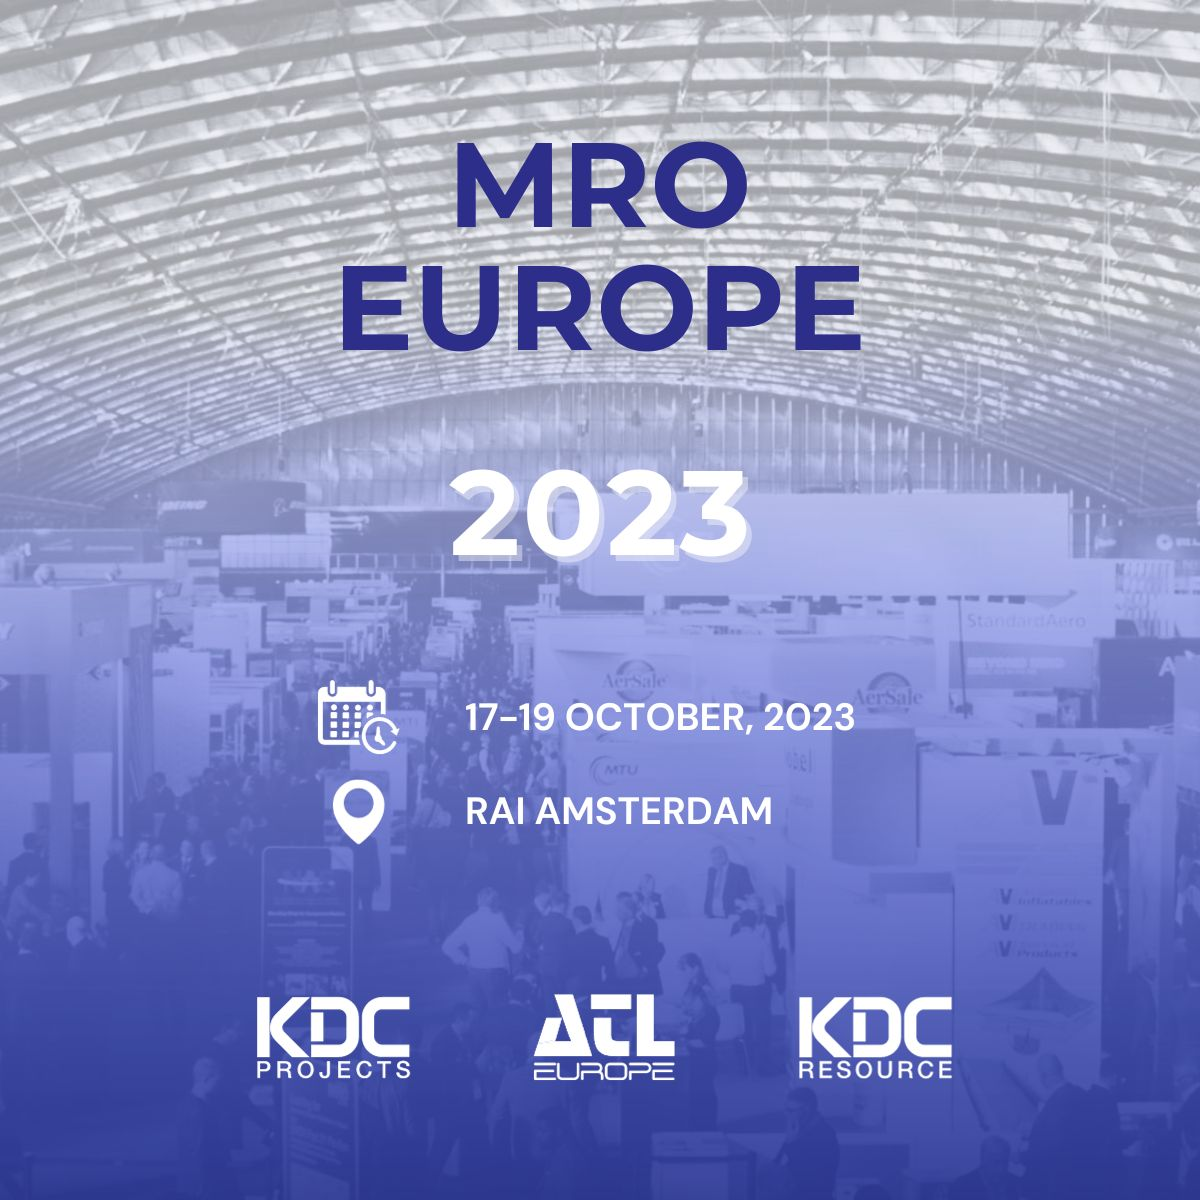 MRO Europe Image